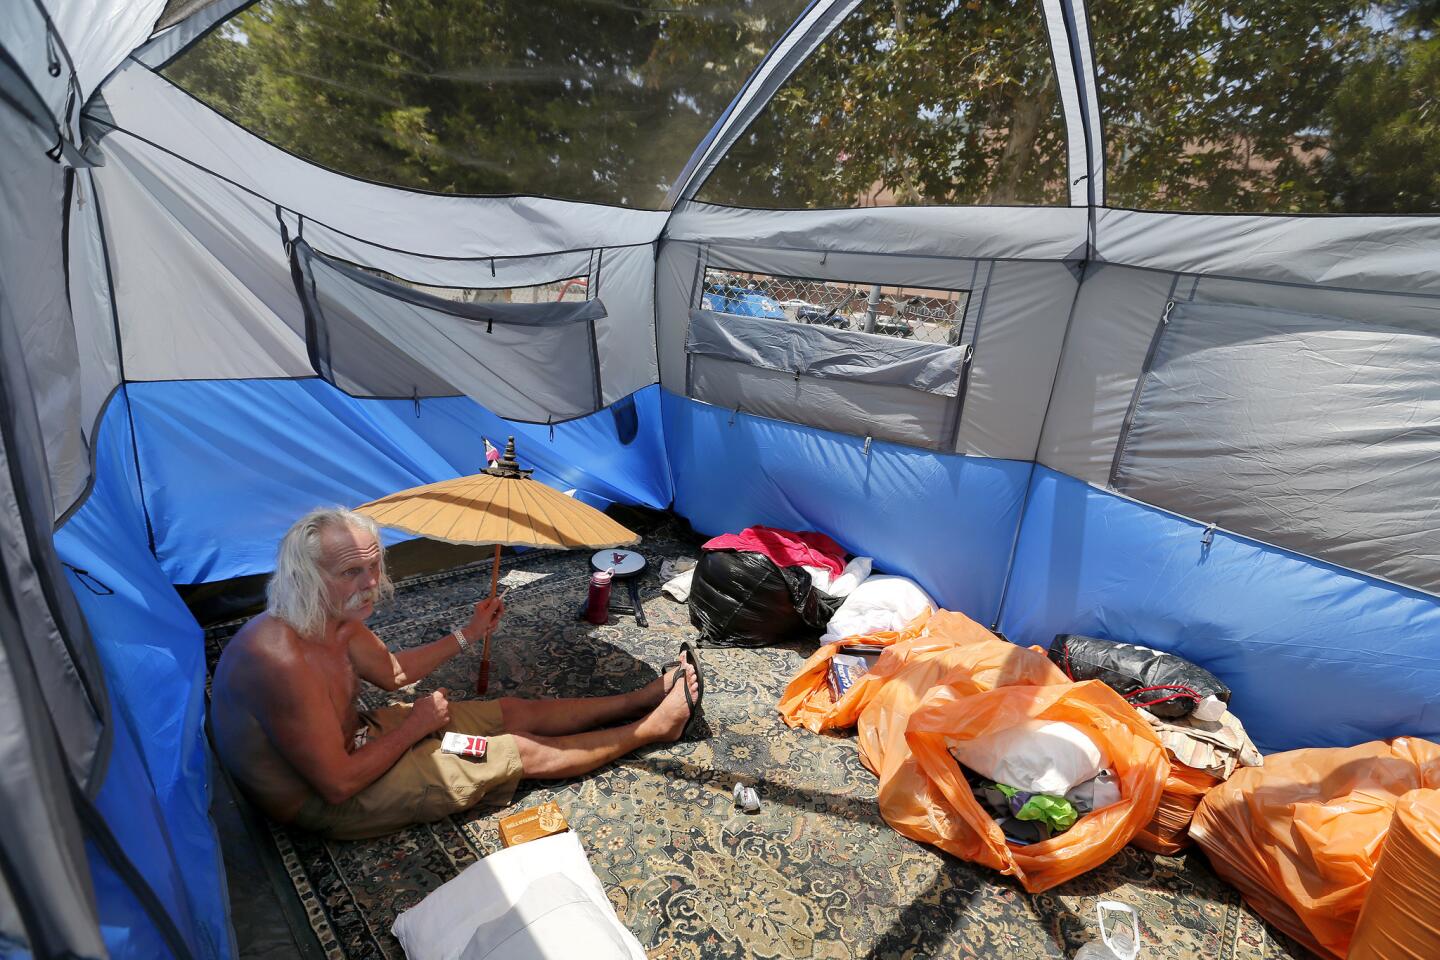 Anaheim homeless